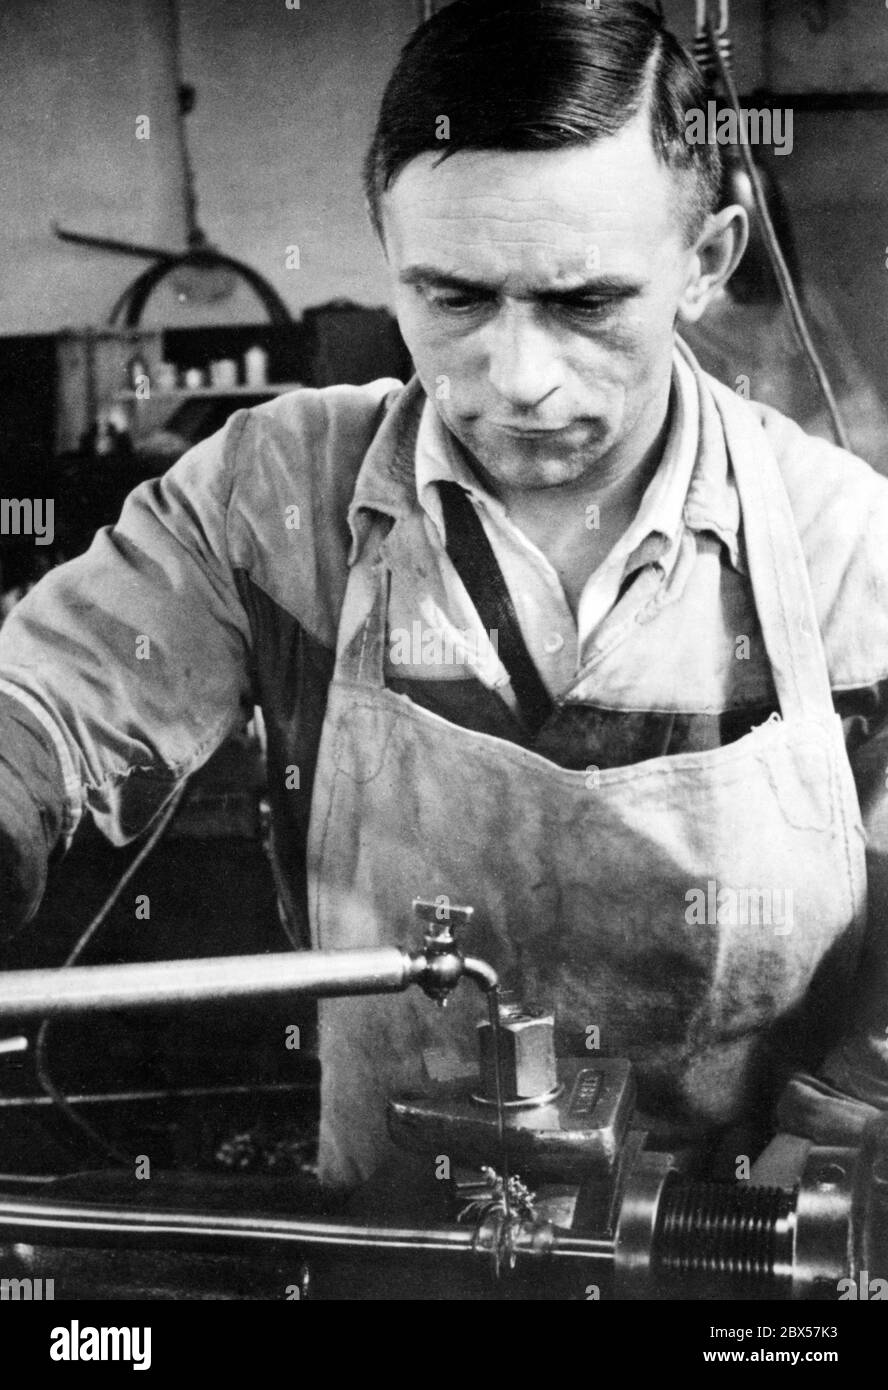 Ein Mitarbeiter einer Rüstungsfabrik kühlt sein Werkstück beim Wenden mit Wasser, damit es nicht zu viel aufheizt. Stockfoto